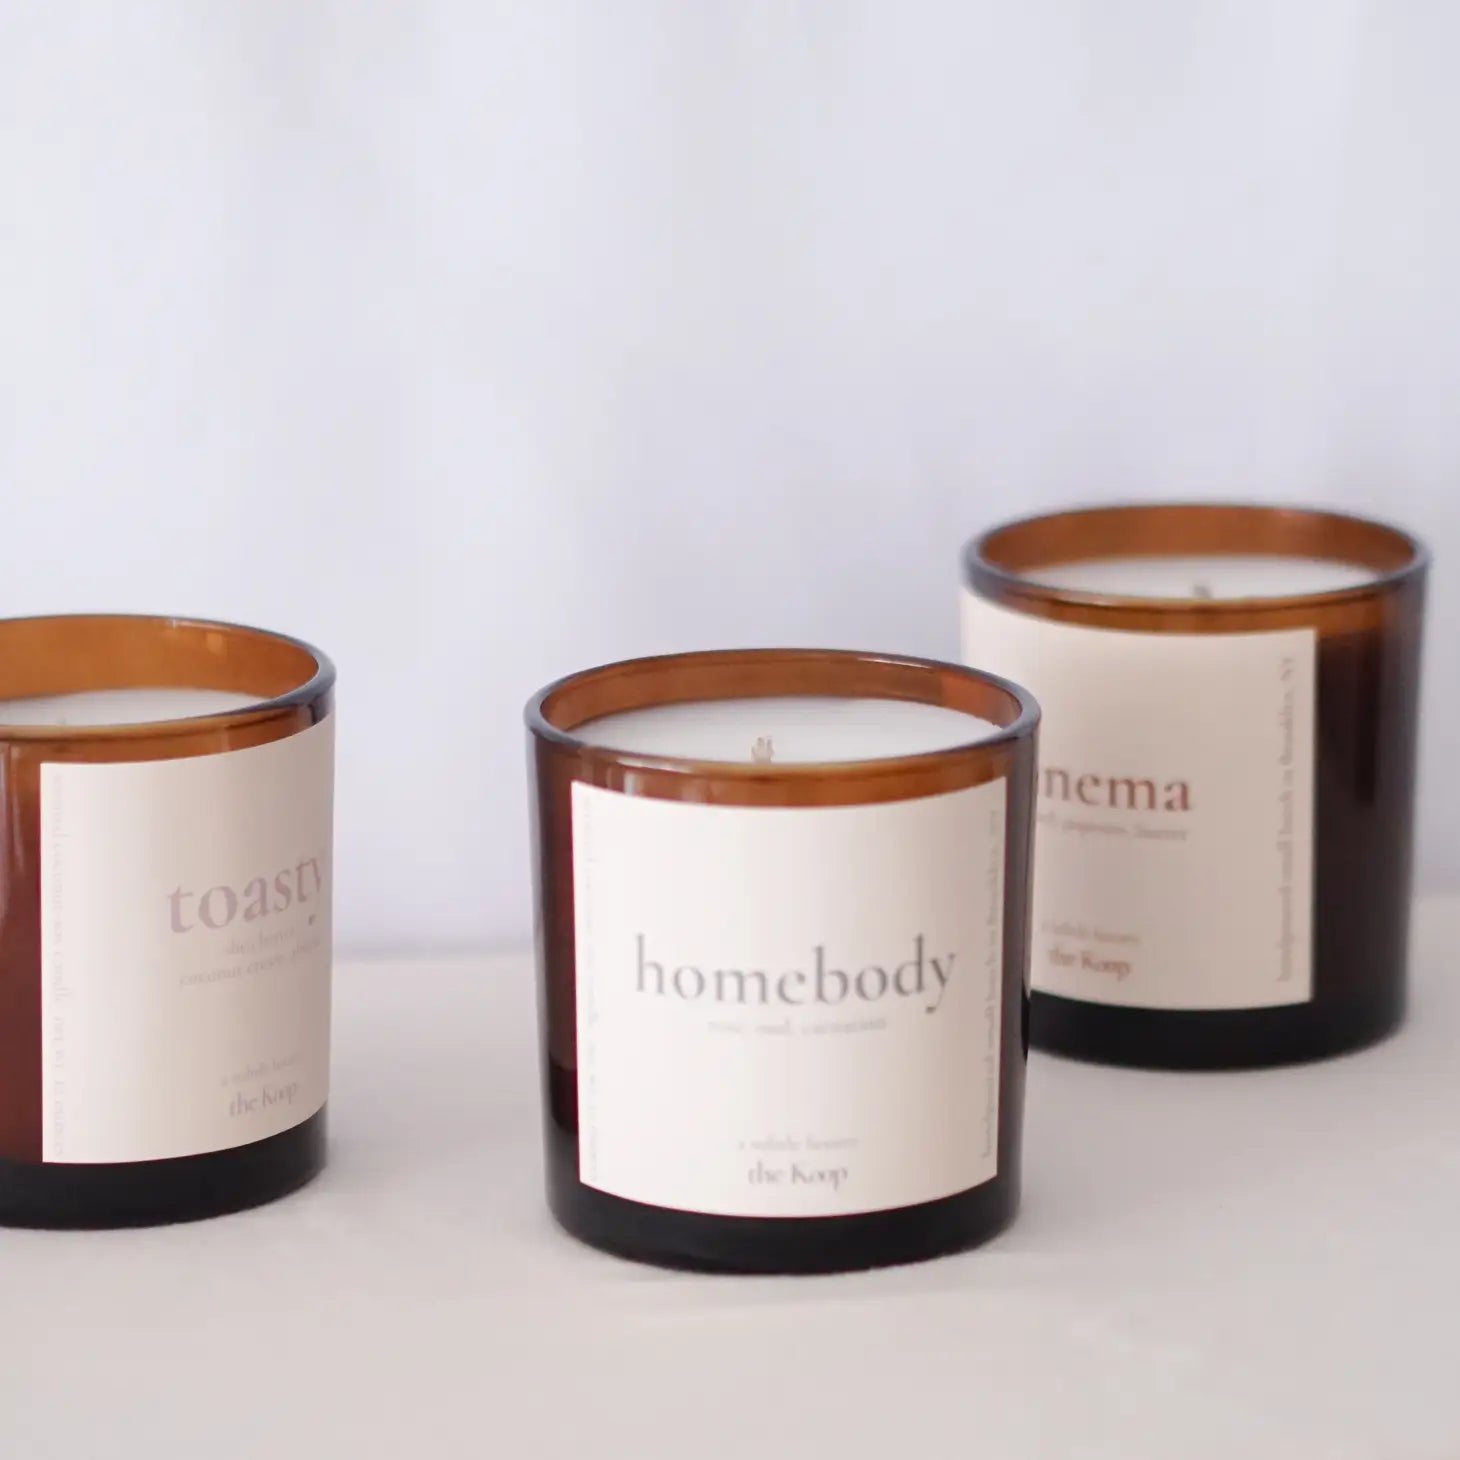 Homebody Candle - Koop NYC